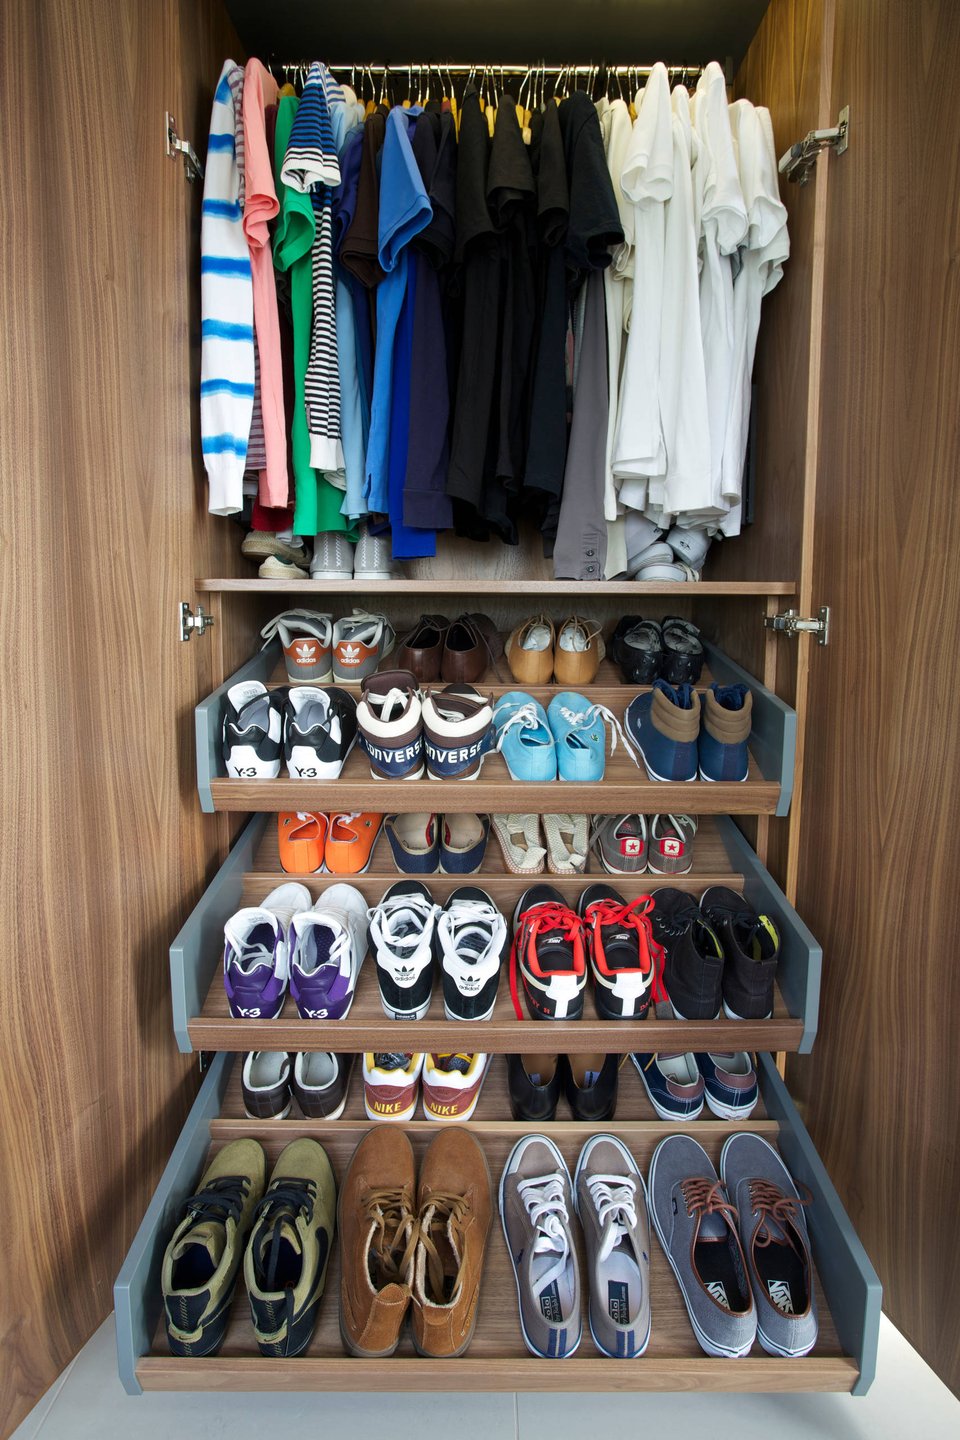 Для организации хранения обуви рекомендуется использовать отдельный ящик или шкаф со специальными полками для обуви.